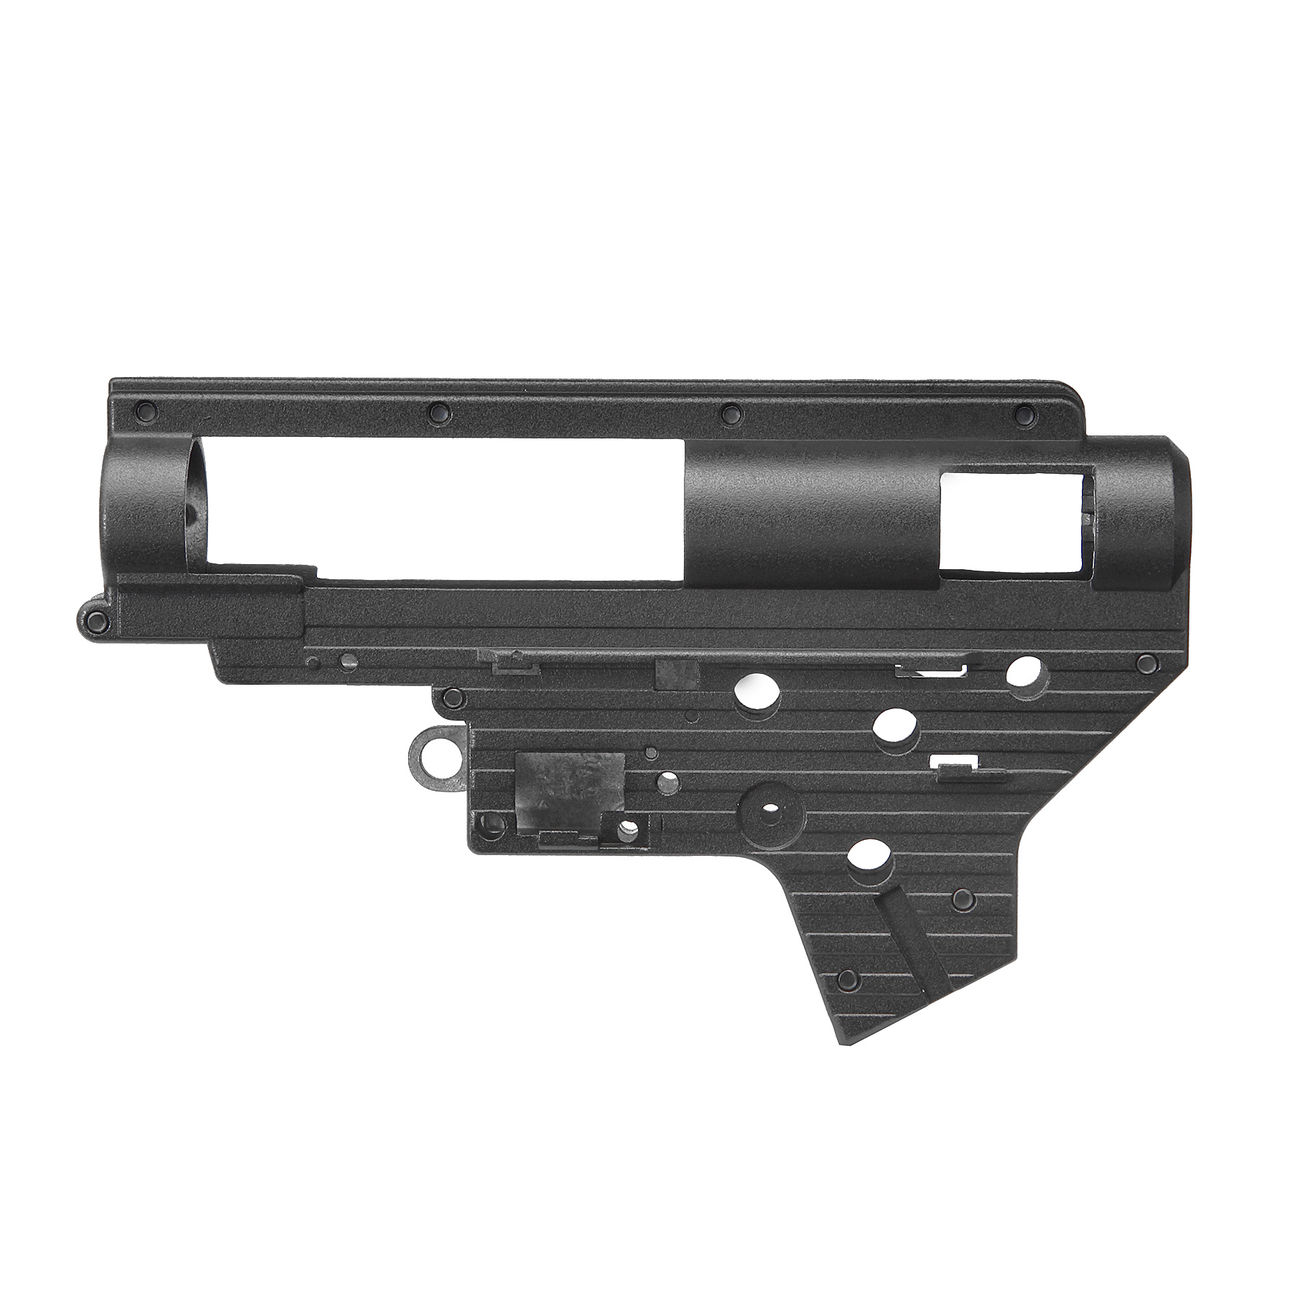 Modify 7mm Torus Aluminium Gearboxgehäuse Version 2 inkl. Zubehör schwarz Bild 1